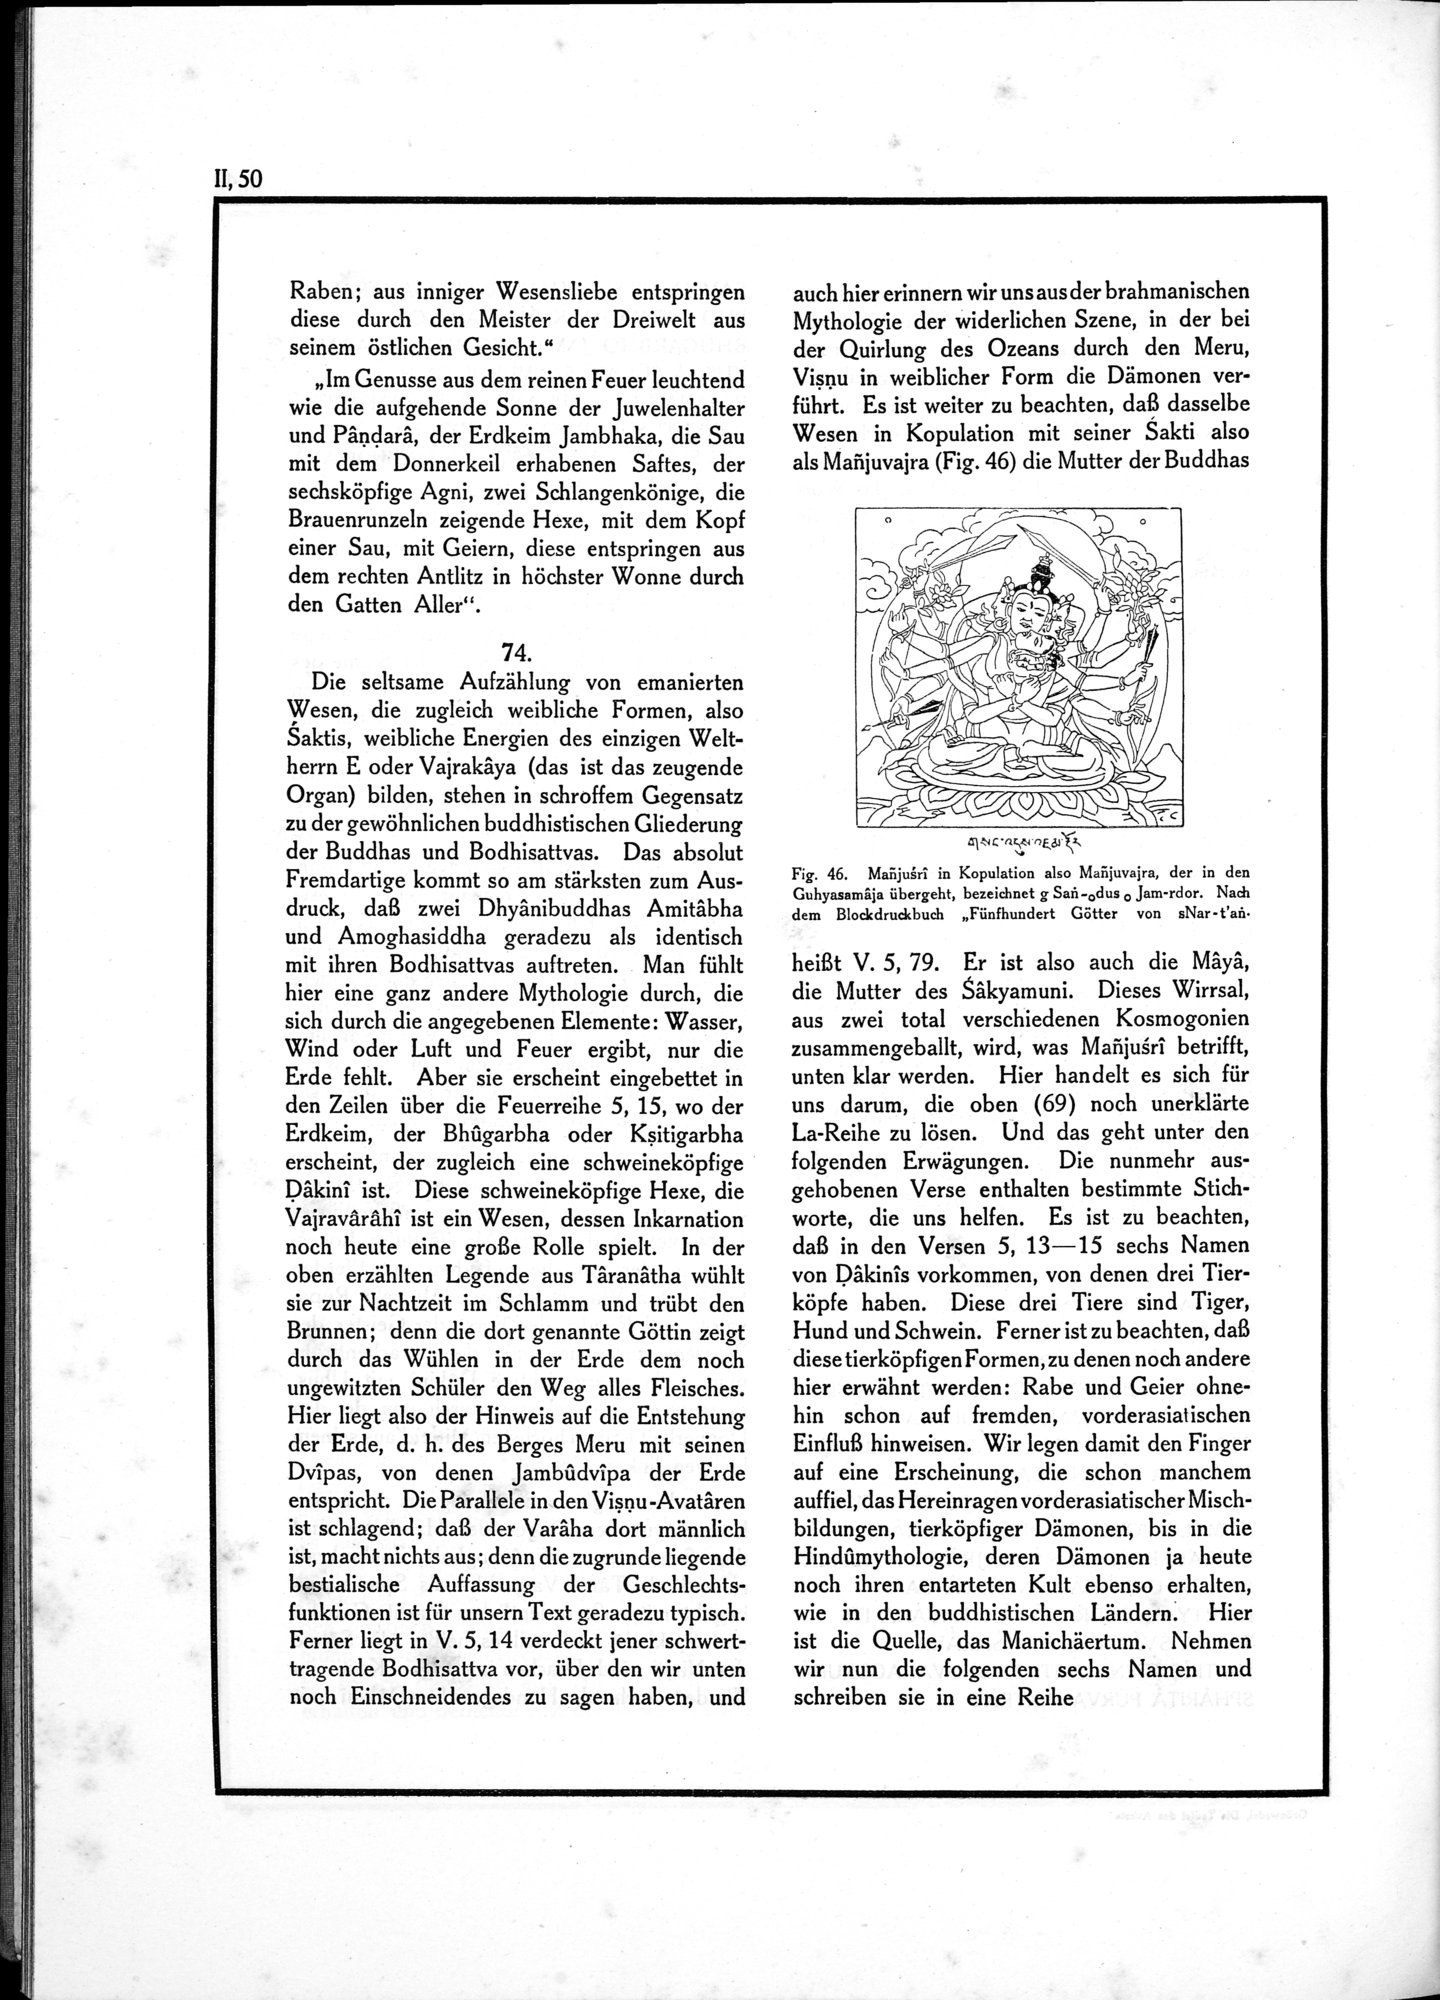 Die Teufel des Avesta und Ihre Beziehungen zur Ikonographie des Buddhismus Zentral-Asiens : vol.1 / Page 506 (Grayscale High Resolution Image)